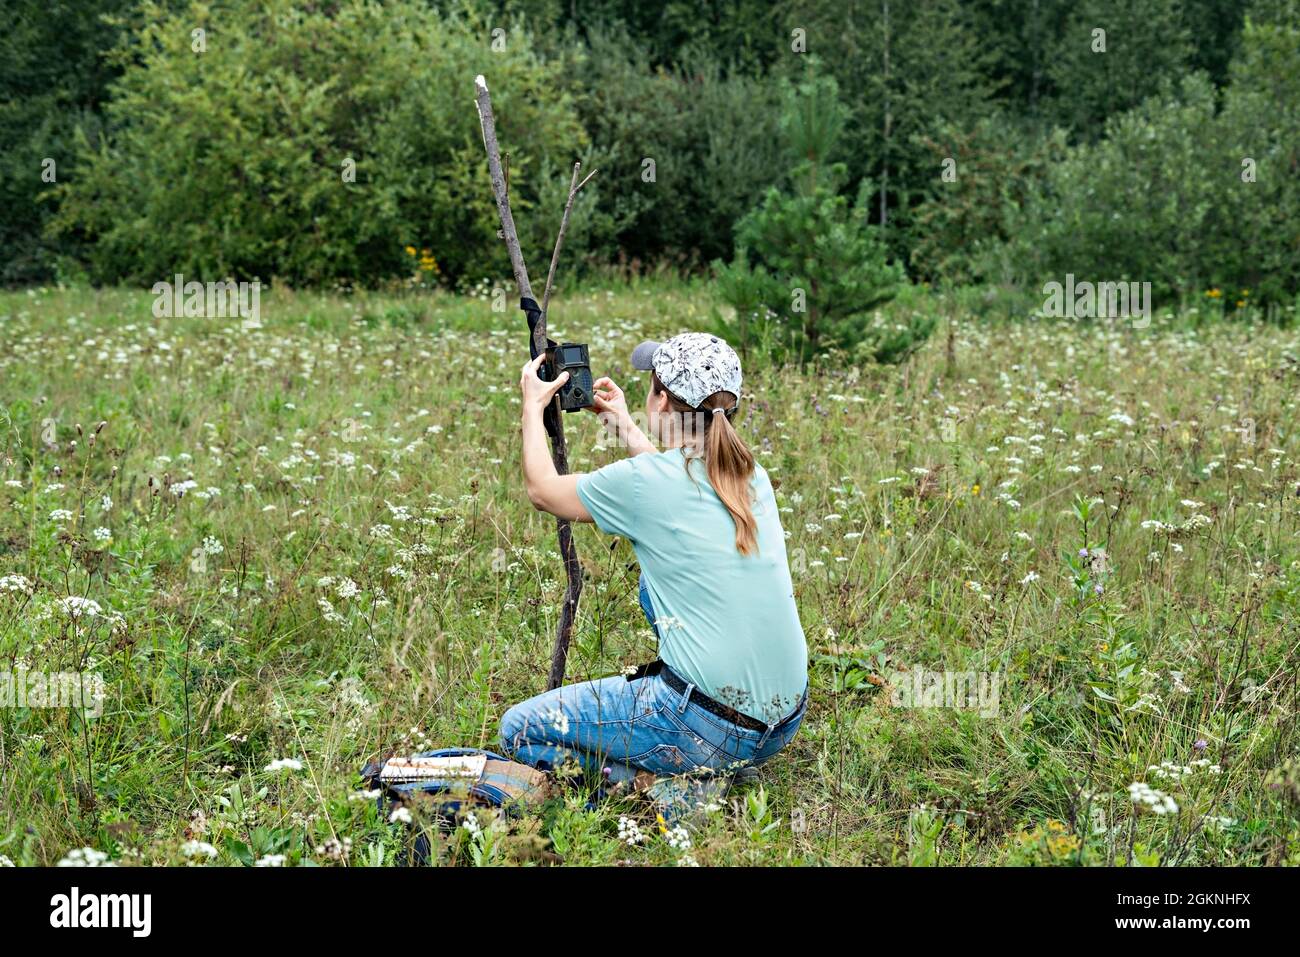 Giovane donna scienziata biologa zoologo imposta trappola fotocamera per osservare animali selvatici in estate foresta taiga per raccogliere dati scientifici ambientale Foto Stock